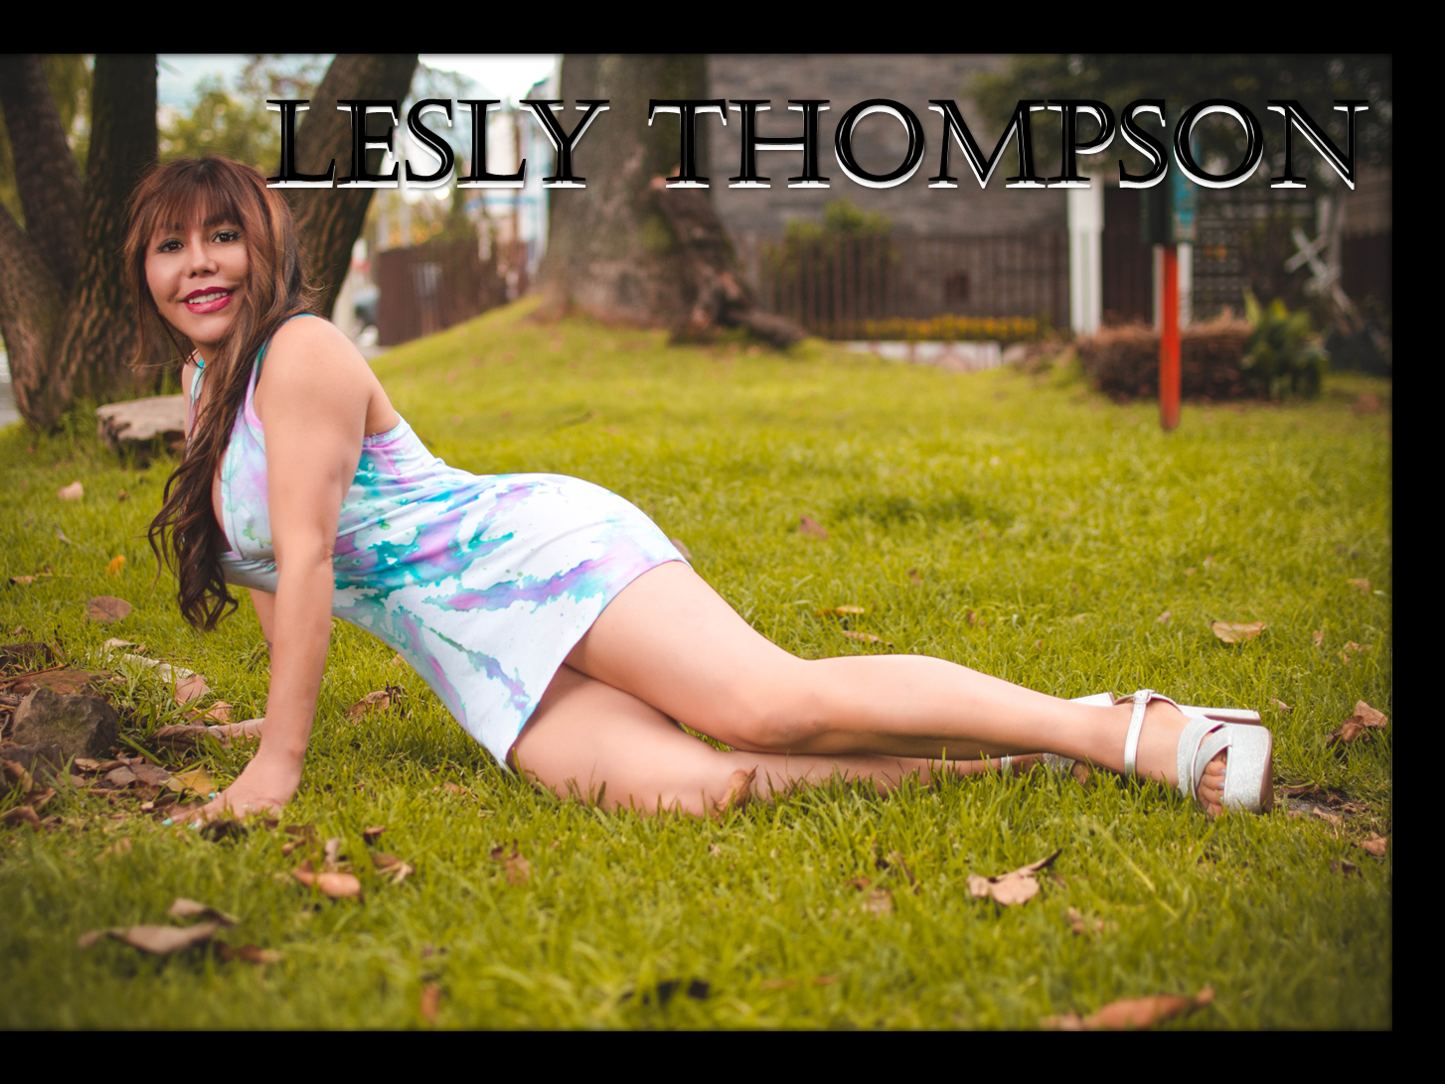 Leslythompson's profile - Image n°2